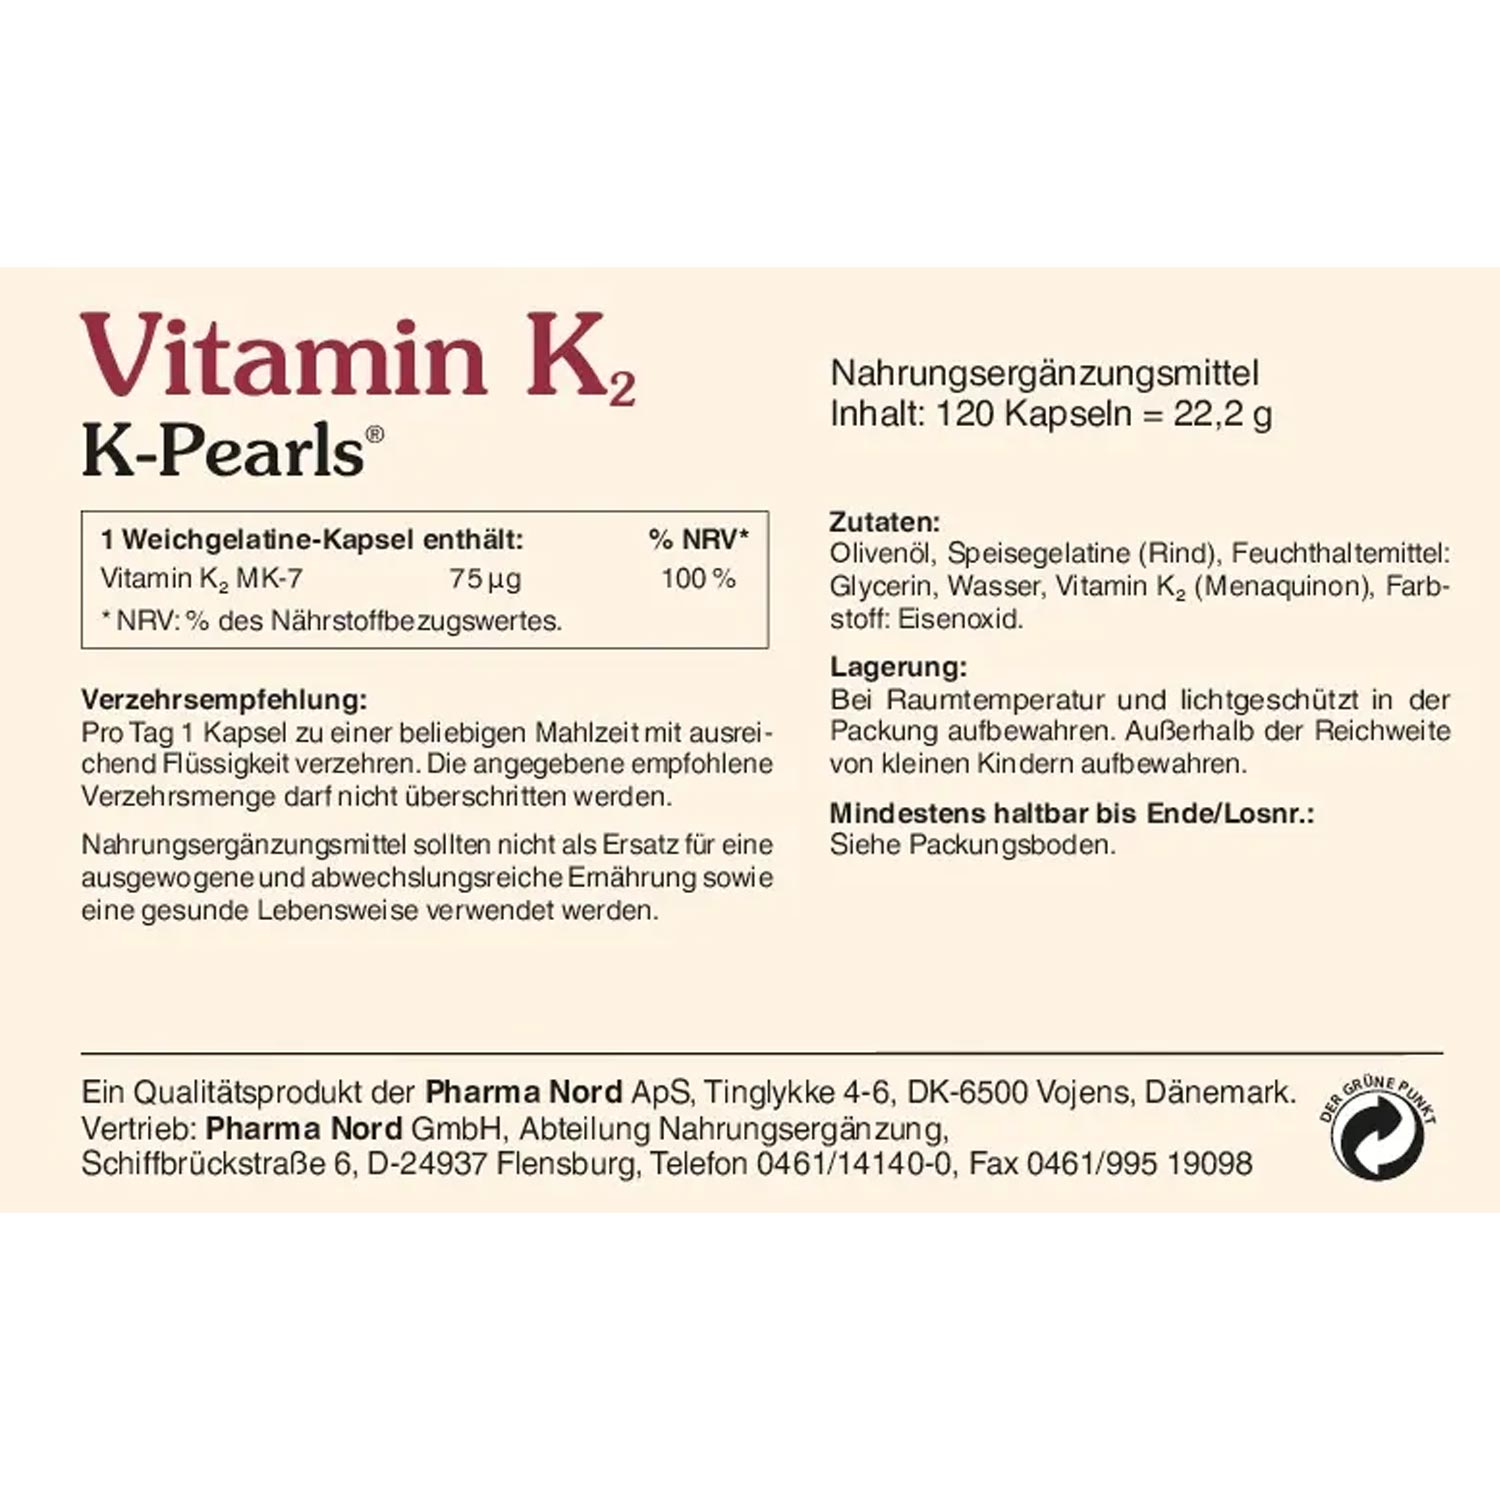 K2 - K-Pearls von Pharma Nord - Etikett Rückseite